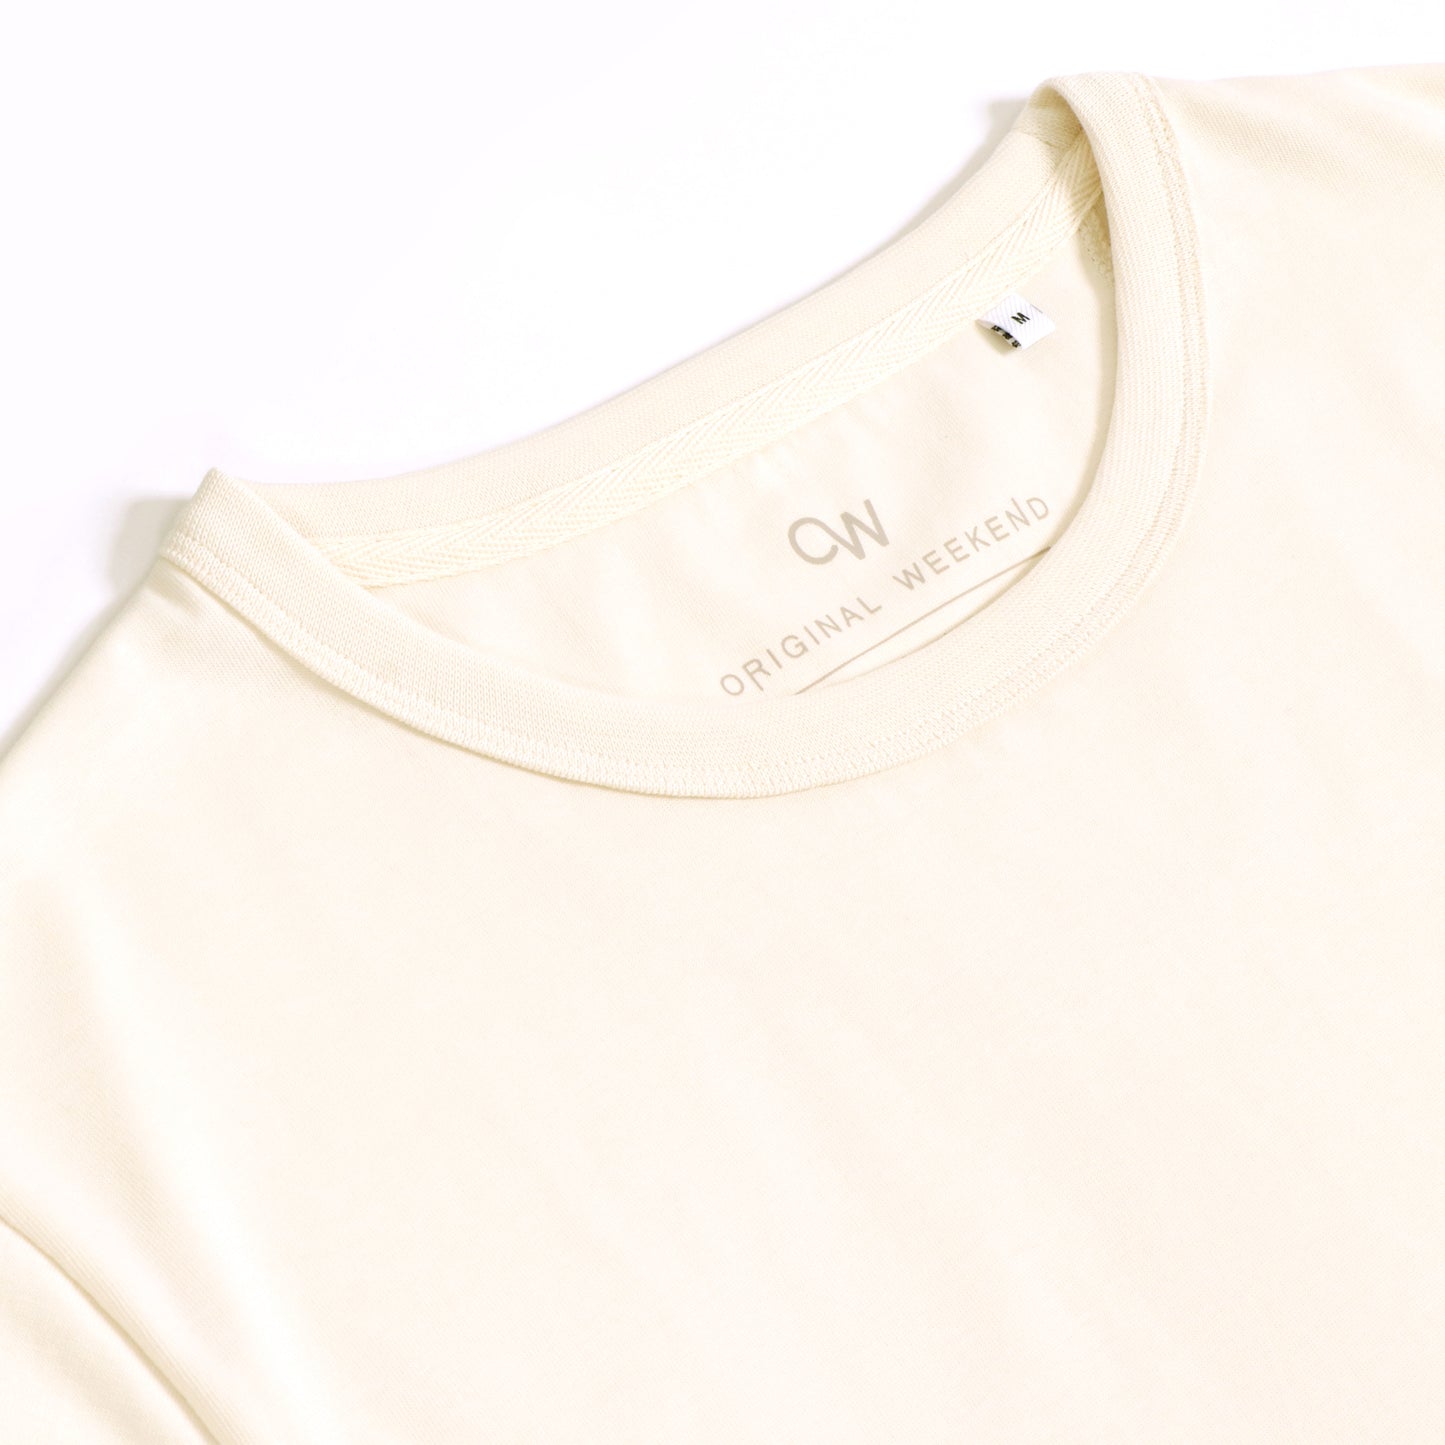 OWTS2004 Off-White Premium Box Fit GOTS Certified Organic Cotton Men's T-Shirt